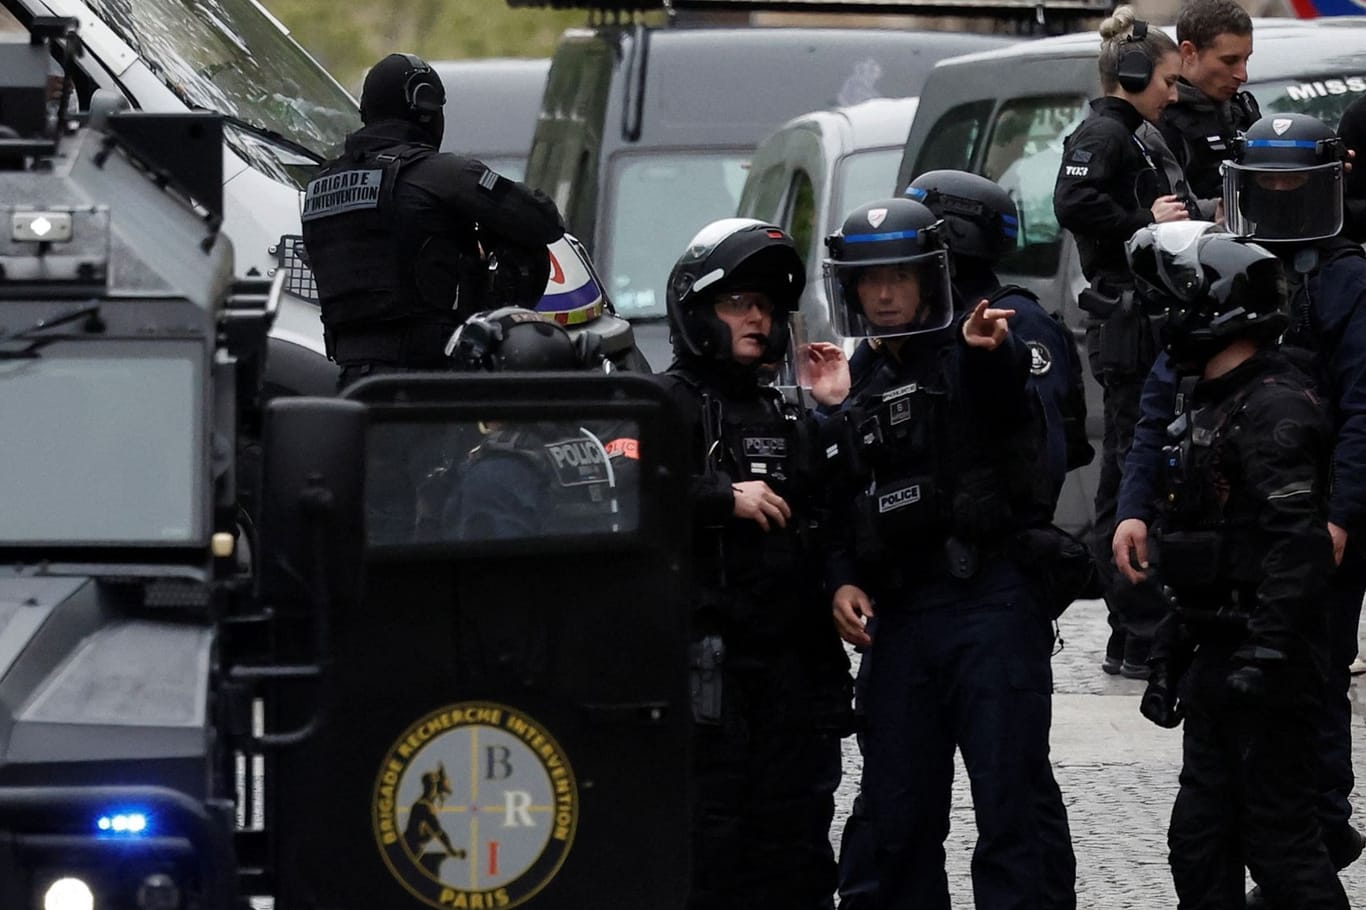 Französische Spezialeinheiten: Im iranischen Konsulat droht ein Mann mit einem Sprengstoffgürtel.